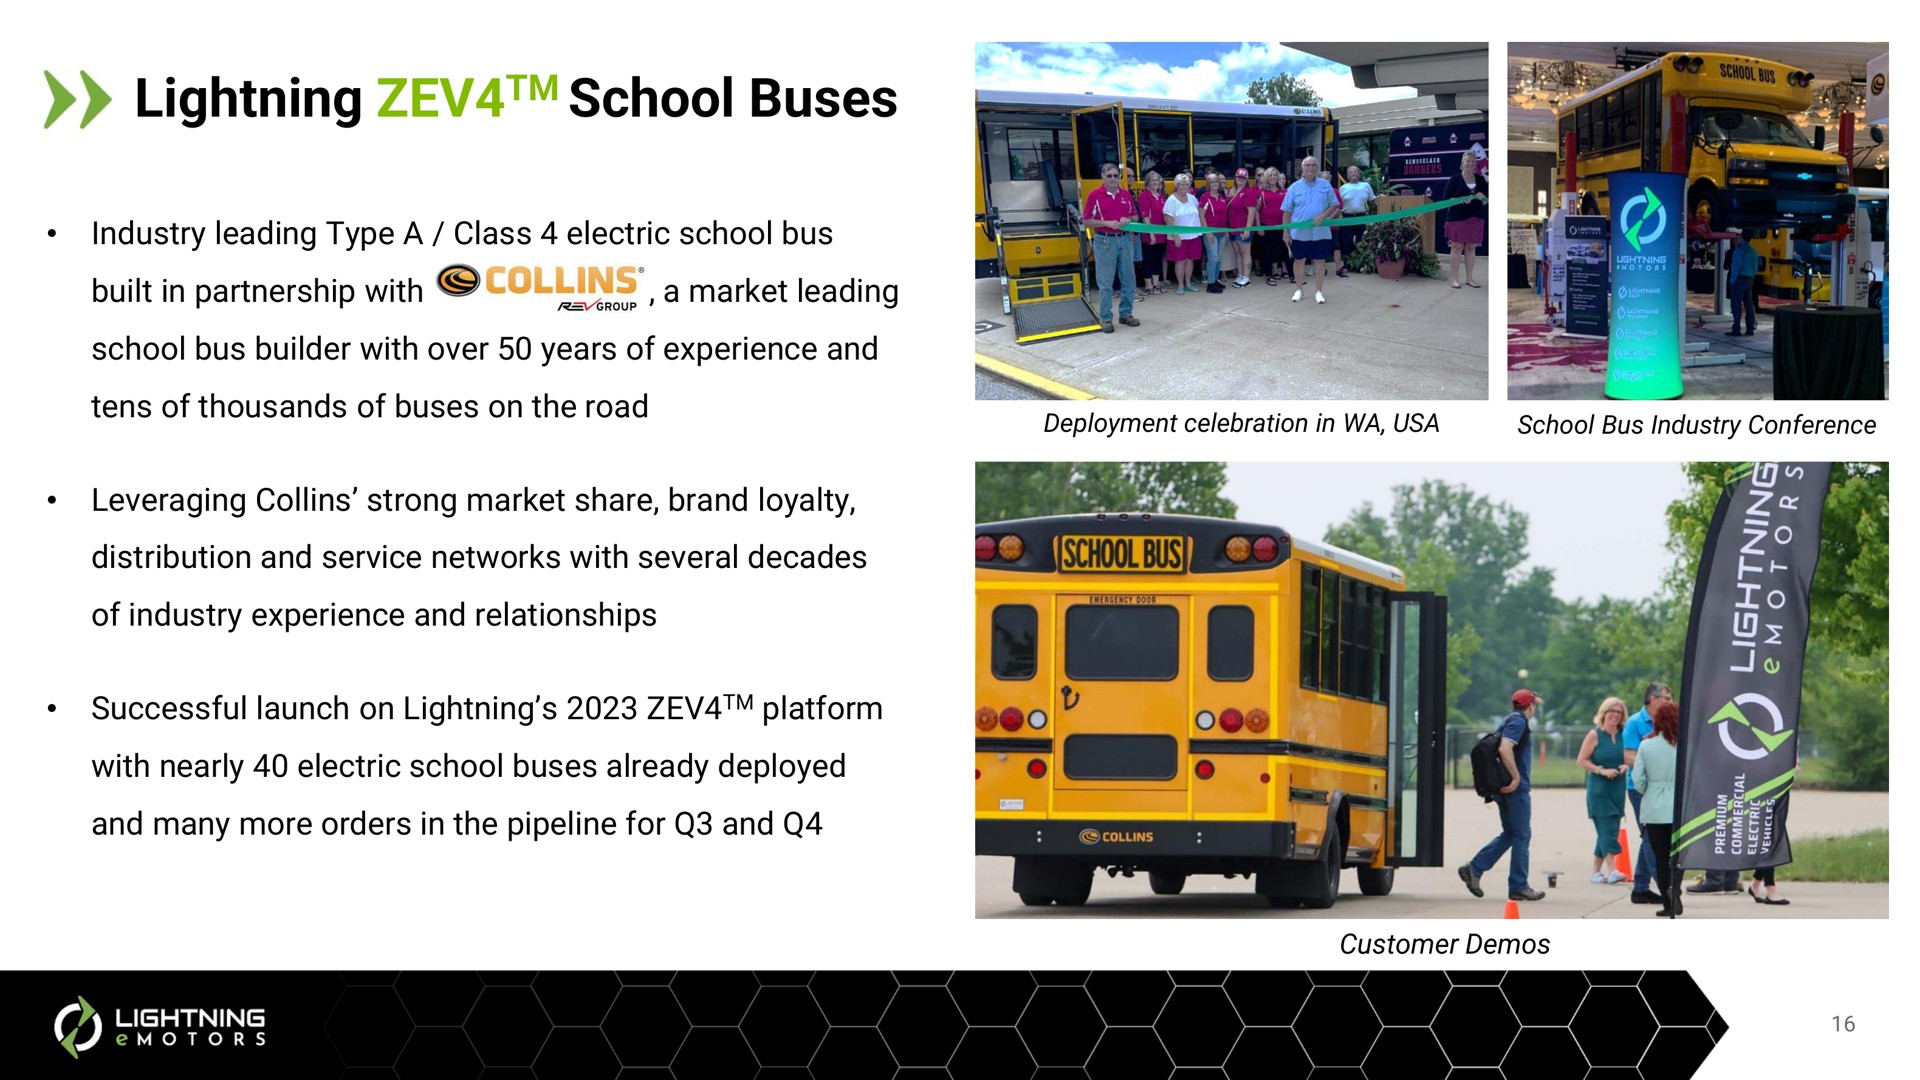 lightning school buses | Lightning eMotors